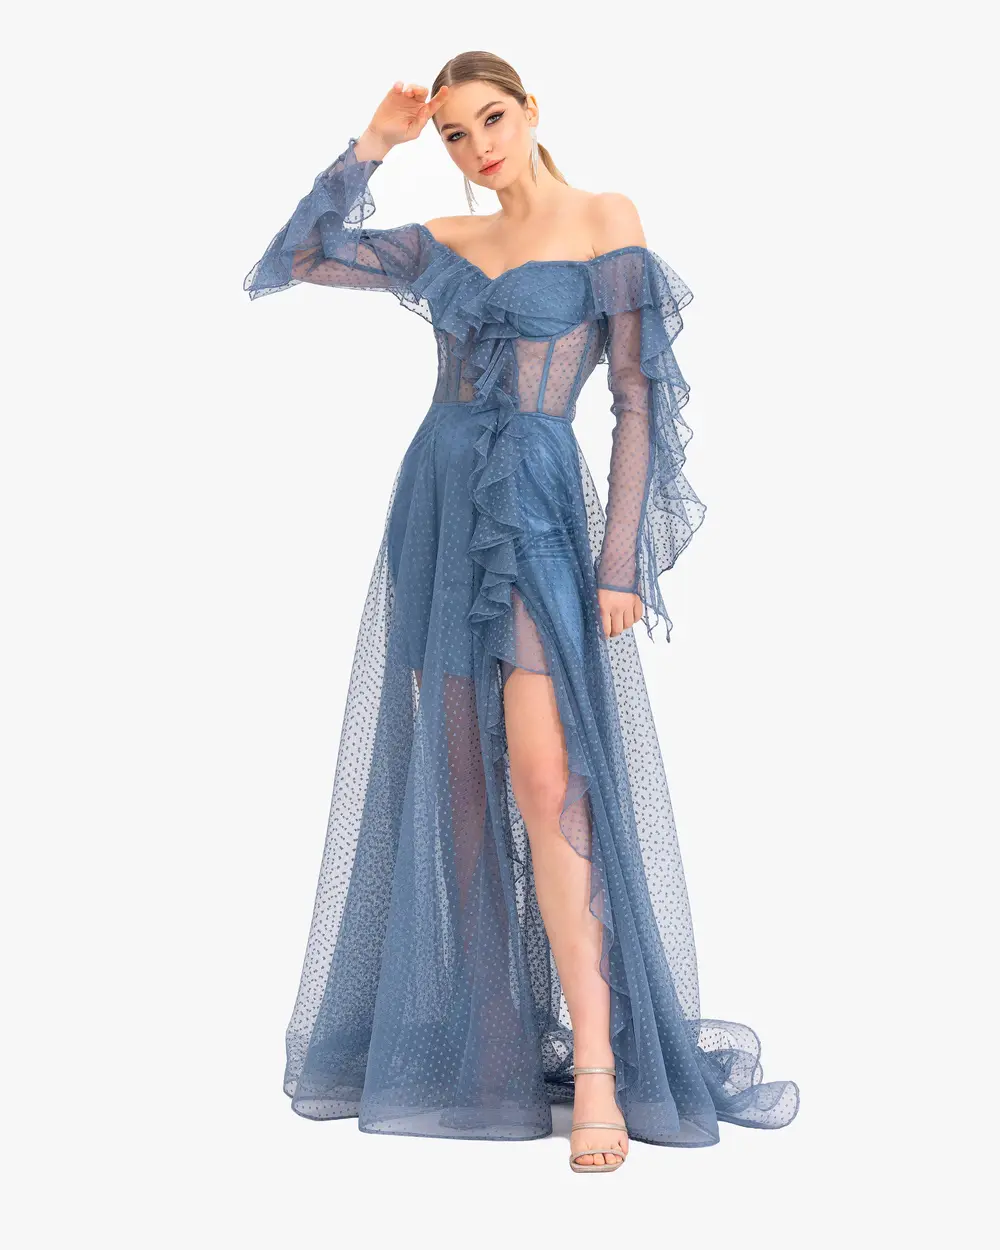 Princess Collar Frilly Tulle Evening Dress